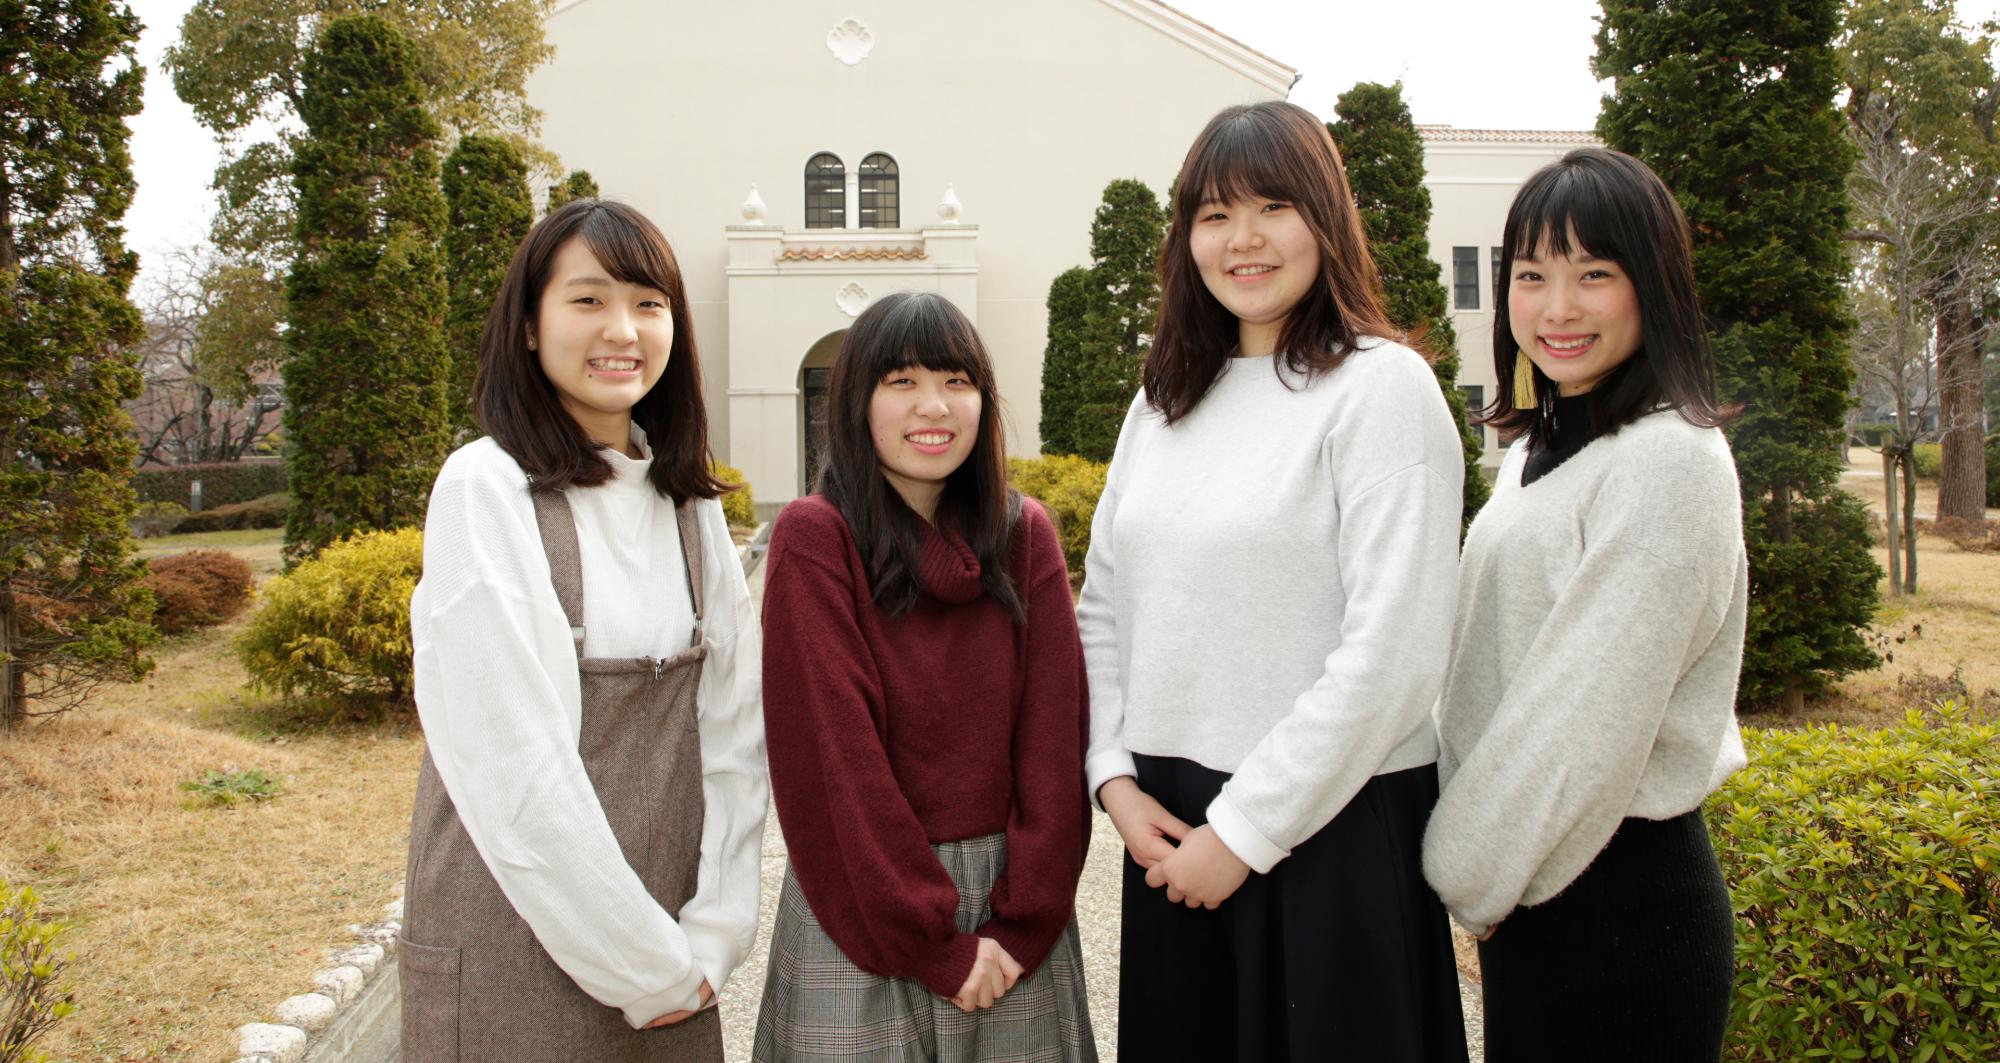 聖和短期大学の施設である山川記念館をバックに、インタビューに応じてくれた大学生4人を写した写真。